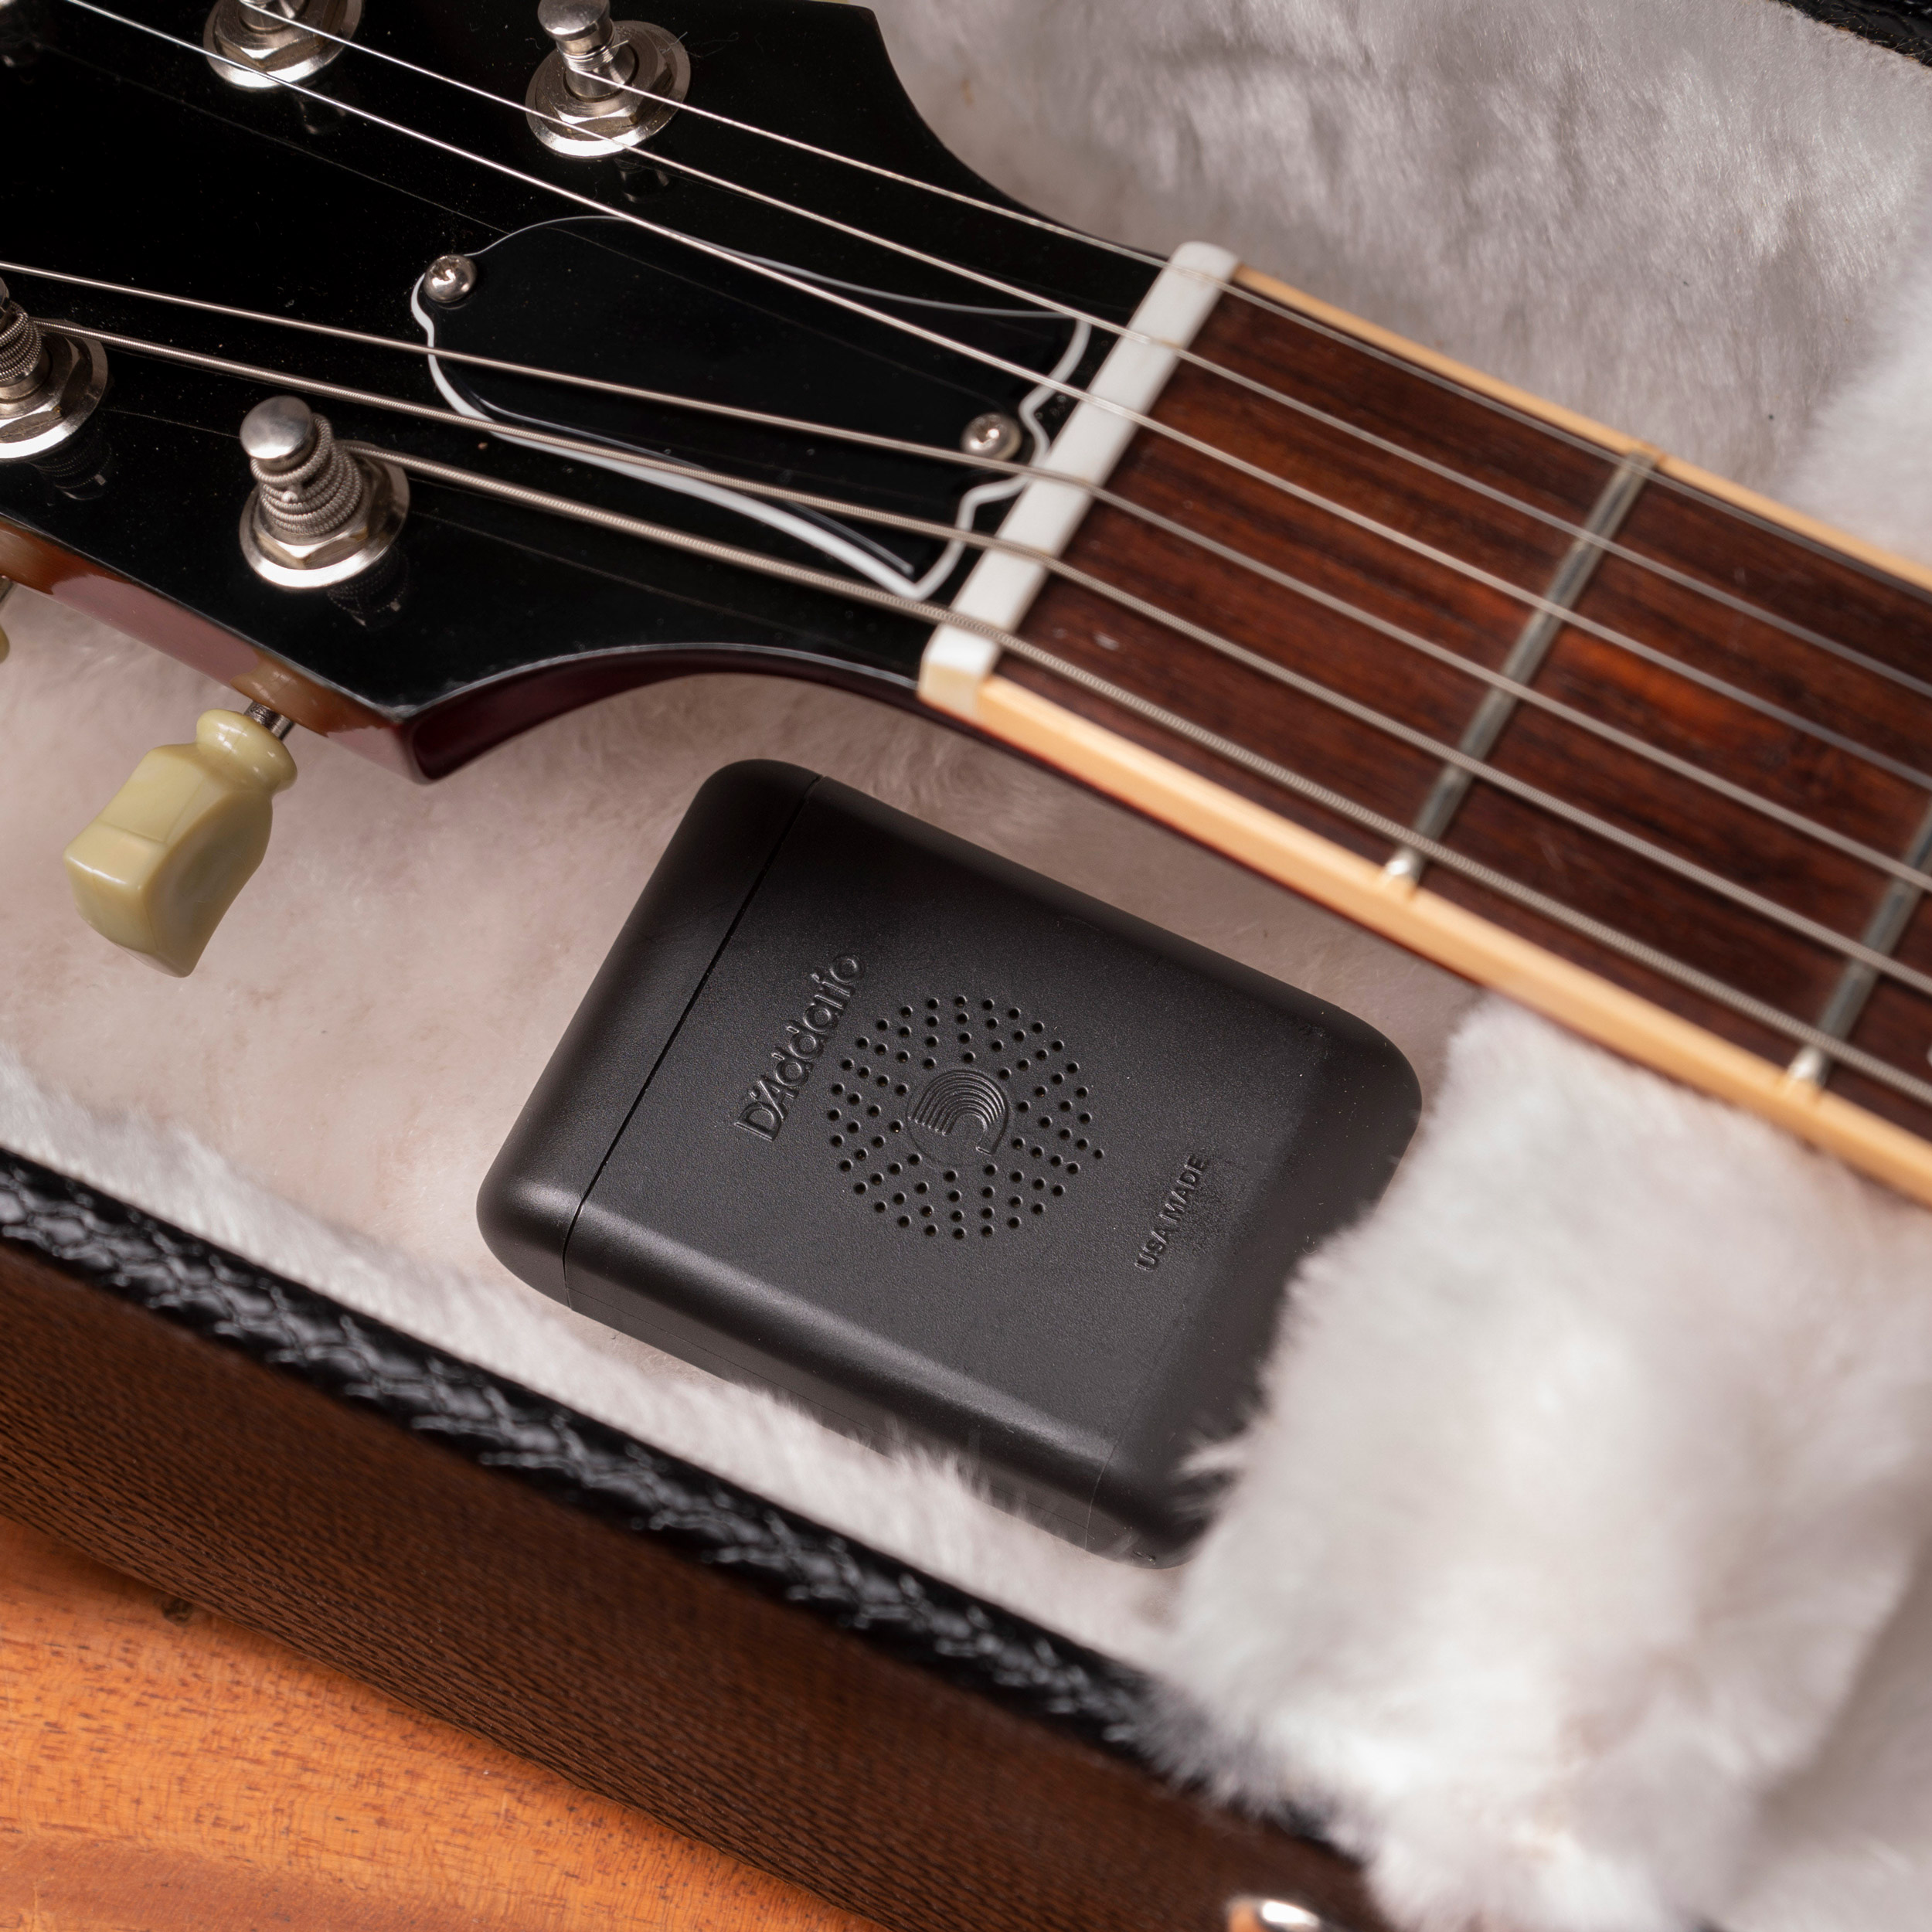 D'Addario Planet Waves Guitar Case Humidifier